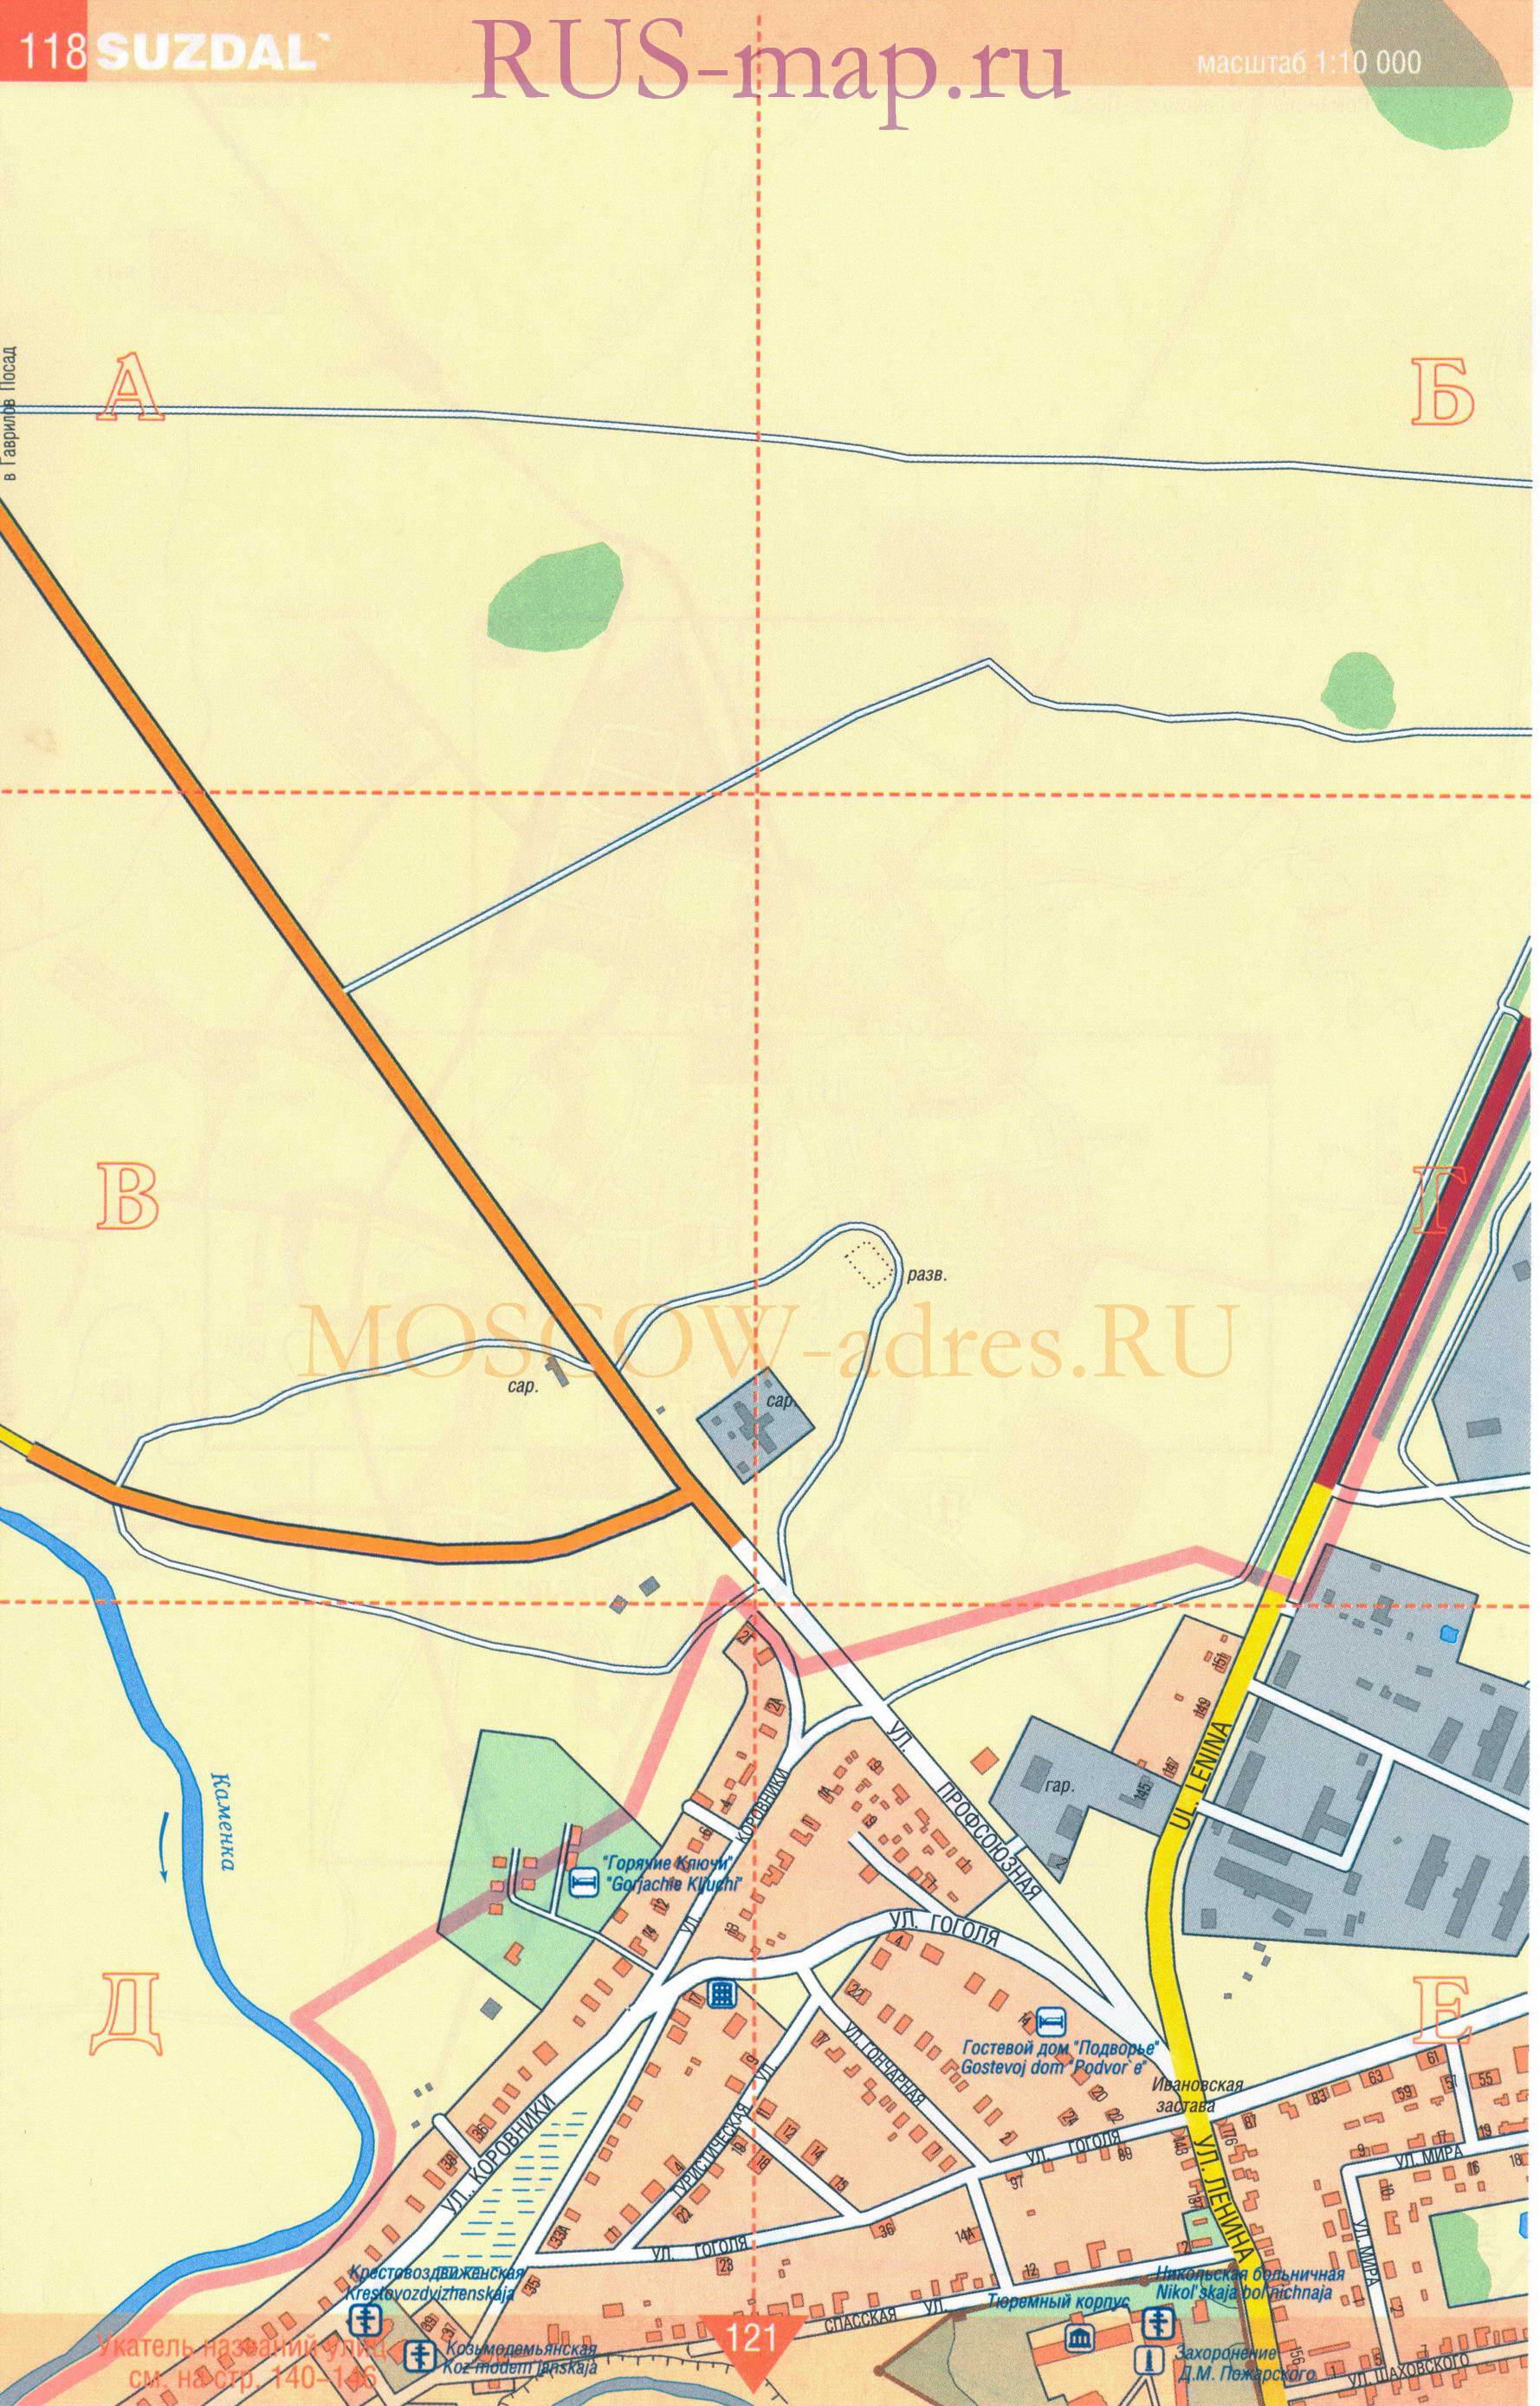 Суздаль. Крупномасштабная карта города Суздаль масштаба 1см:100м, показаны все церкви, музеи, гостиницы, A0 - 